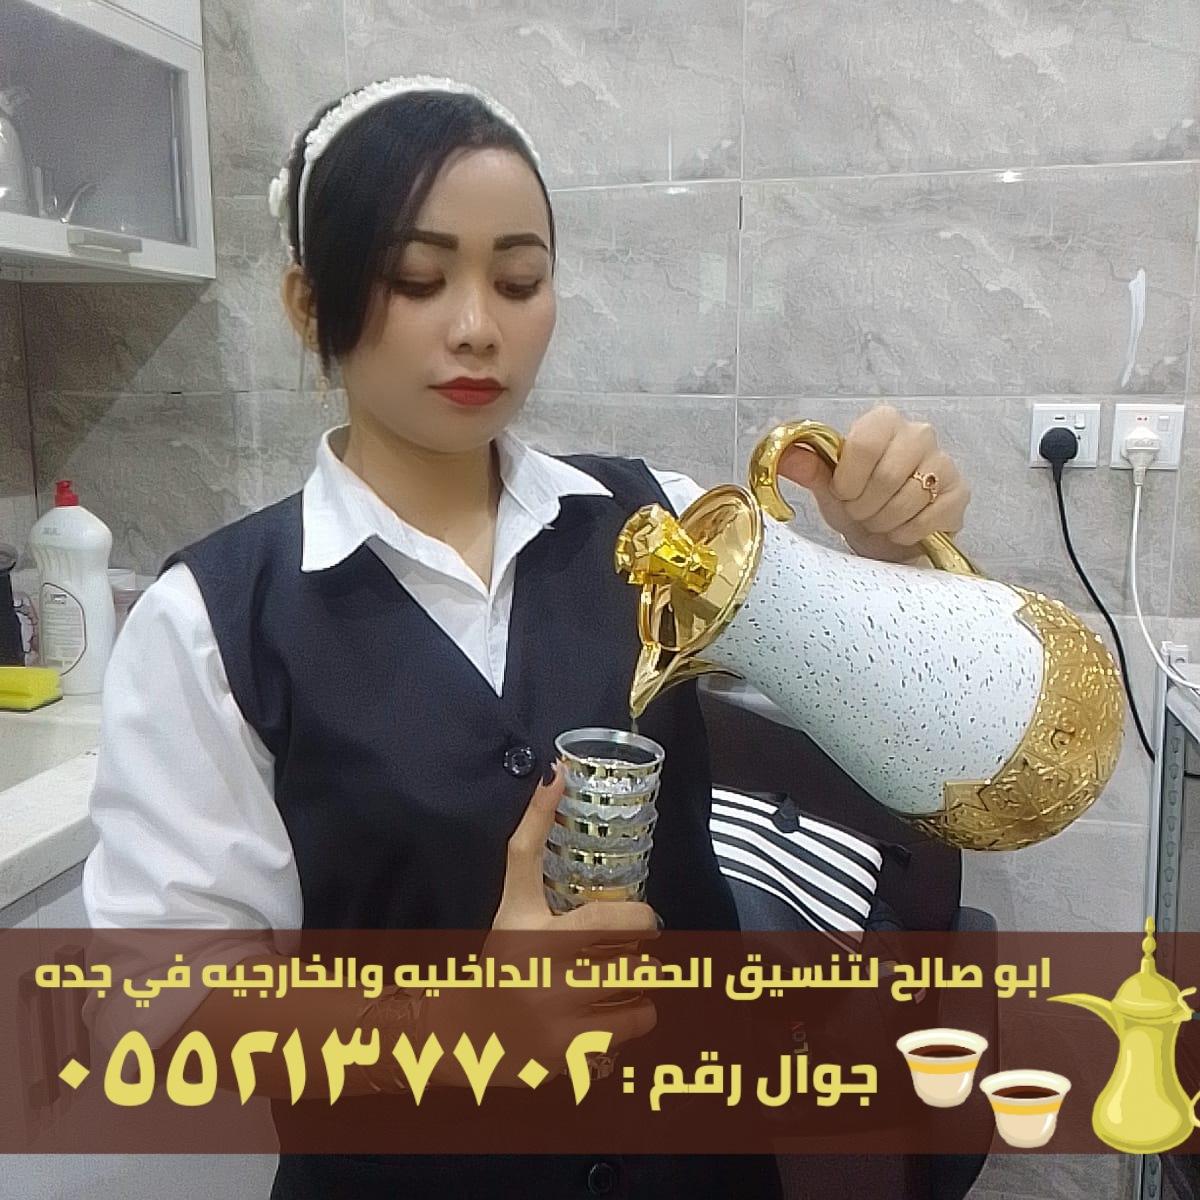 صبابين قهوة و قهوجي ضيافه في جدة,0552137702 929853795